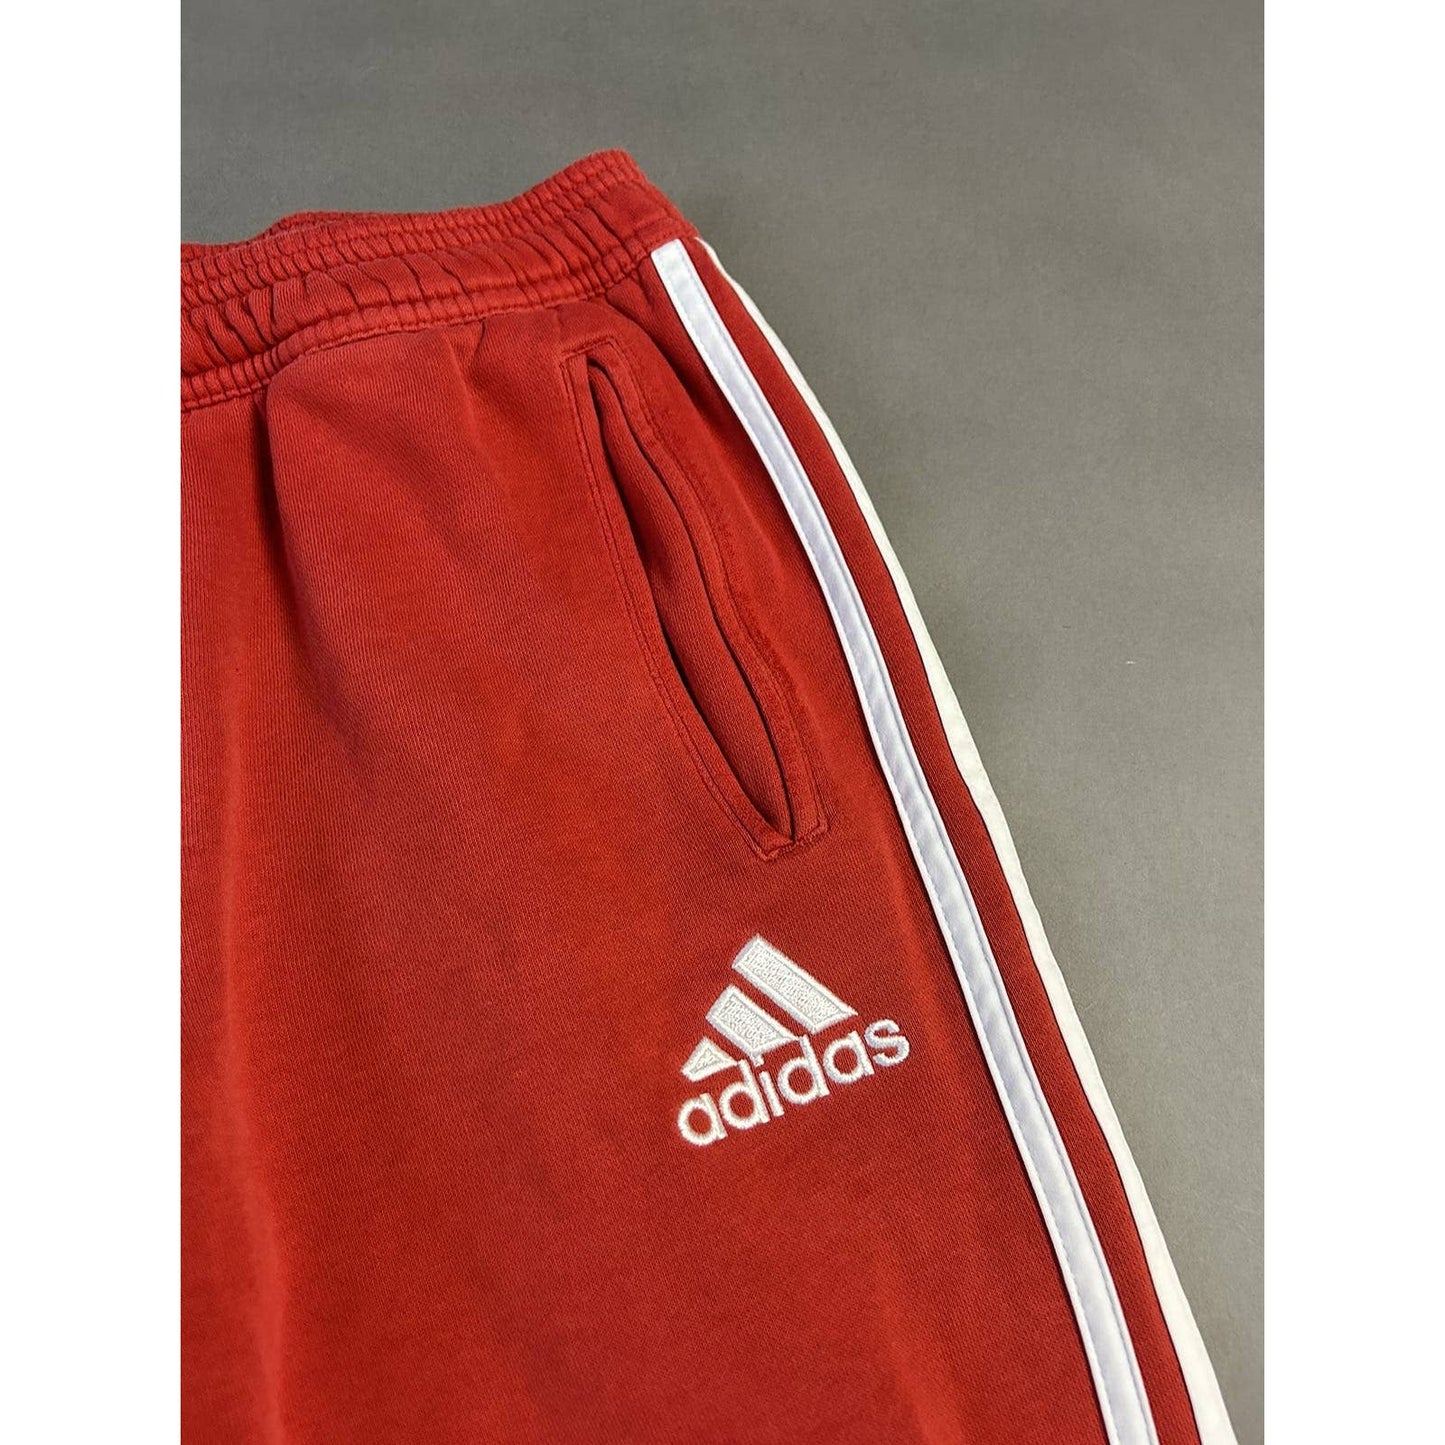 Adidas Bayern Munich red sweatpants